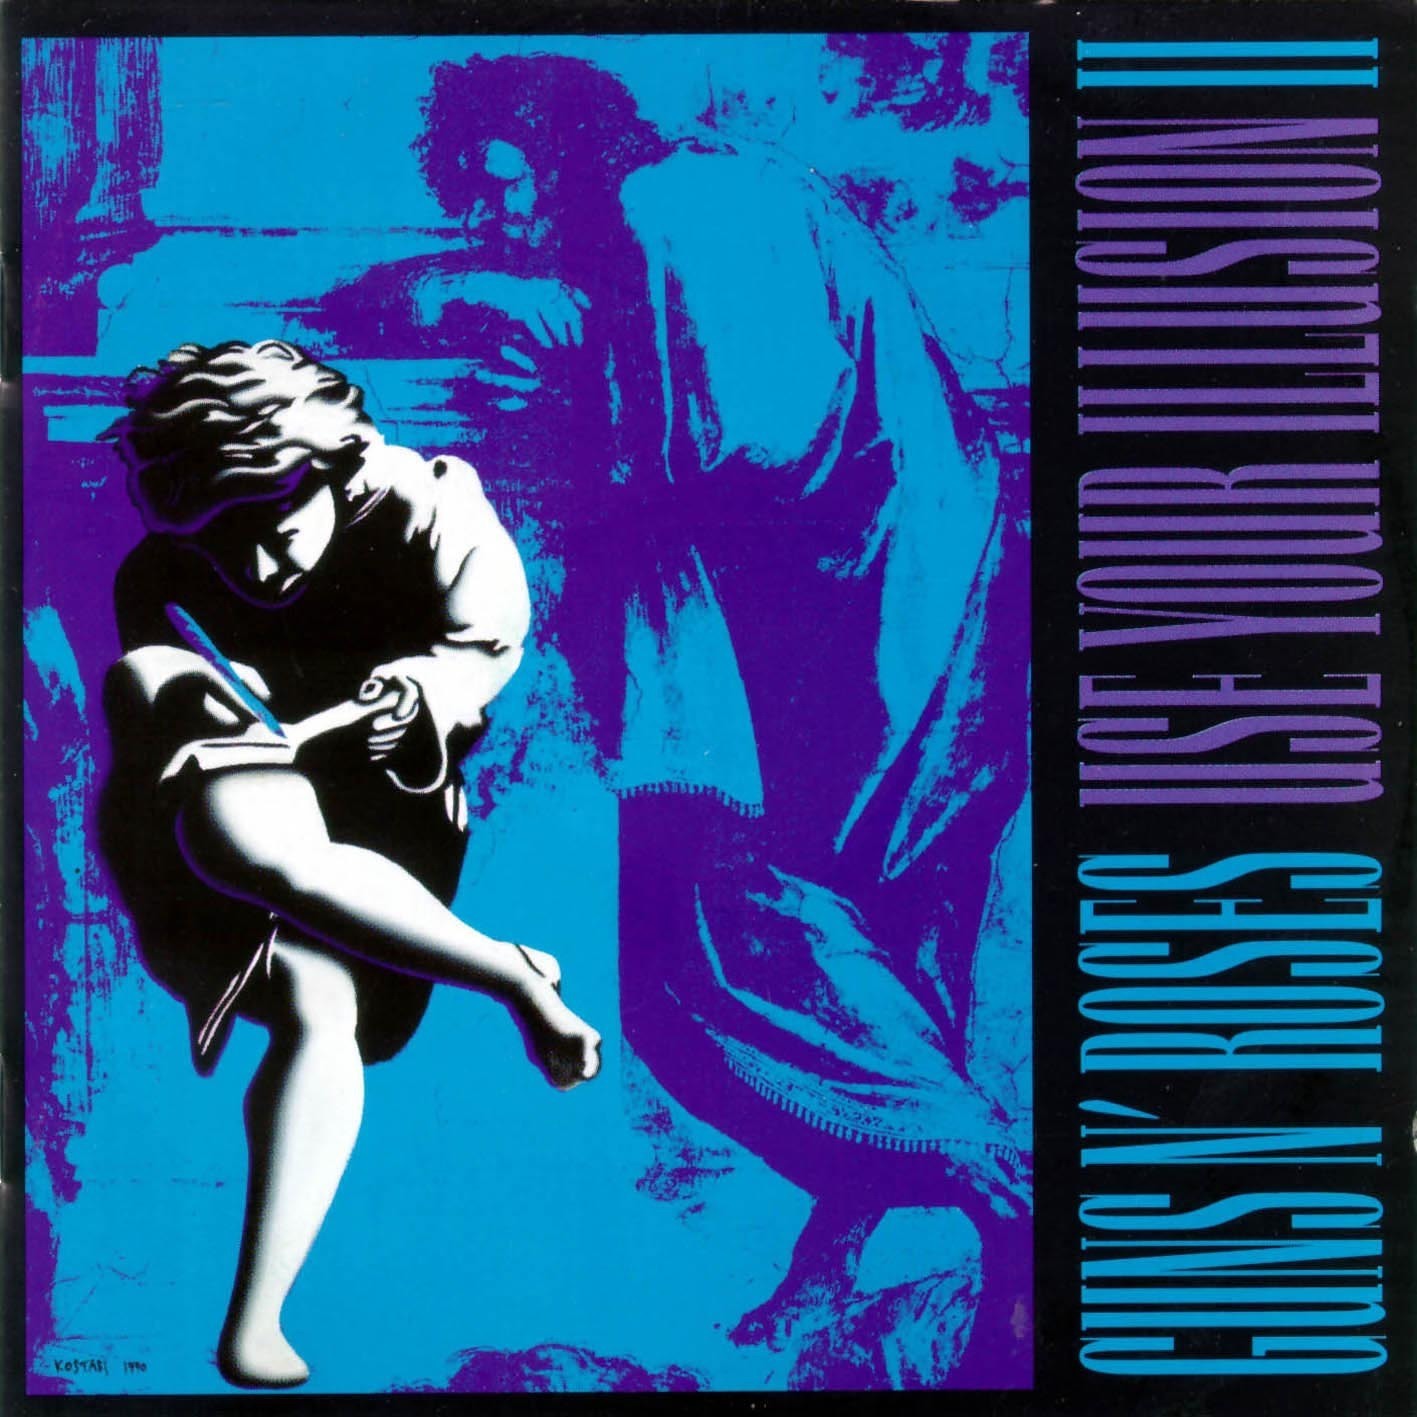 Виниловая пластинка Guns N' Roses, Use Your Illusion Ii (0602445117314) guns n roses use your illusion i remastered 2022 2lp конверты внутренние coex для грампластинок 12 25шт набор